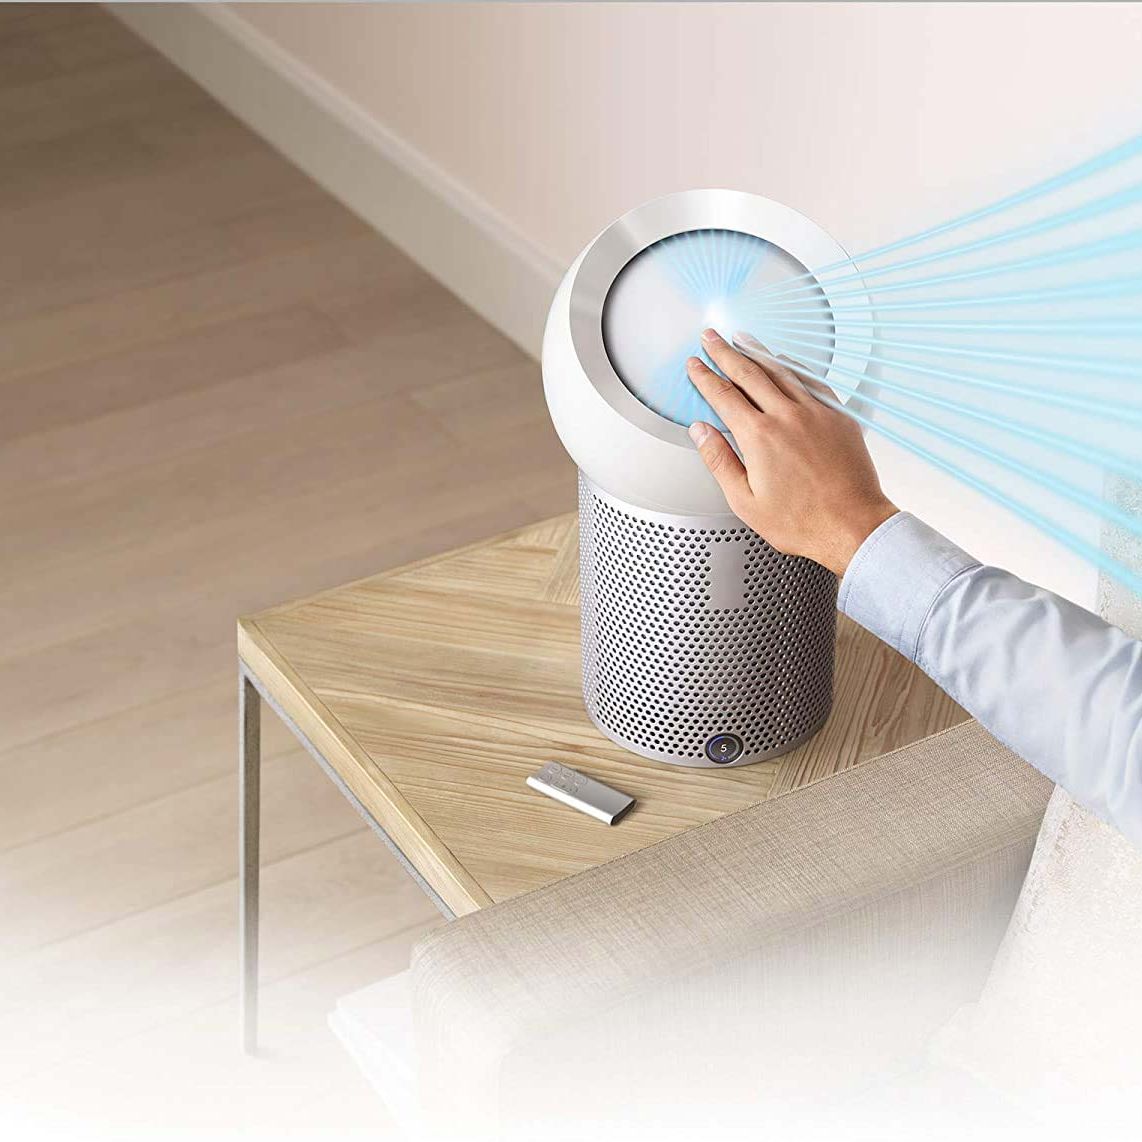 Ozonizador: tecnología avanzada para la higienización del aire